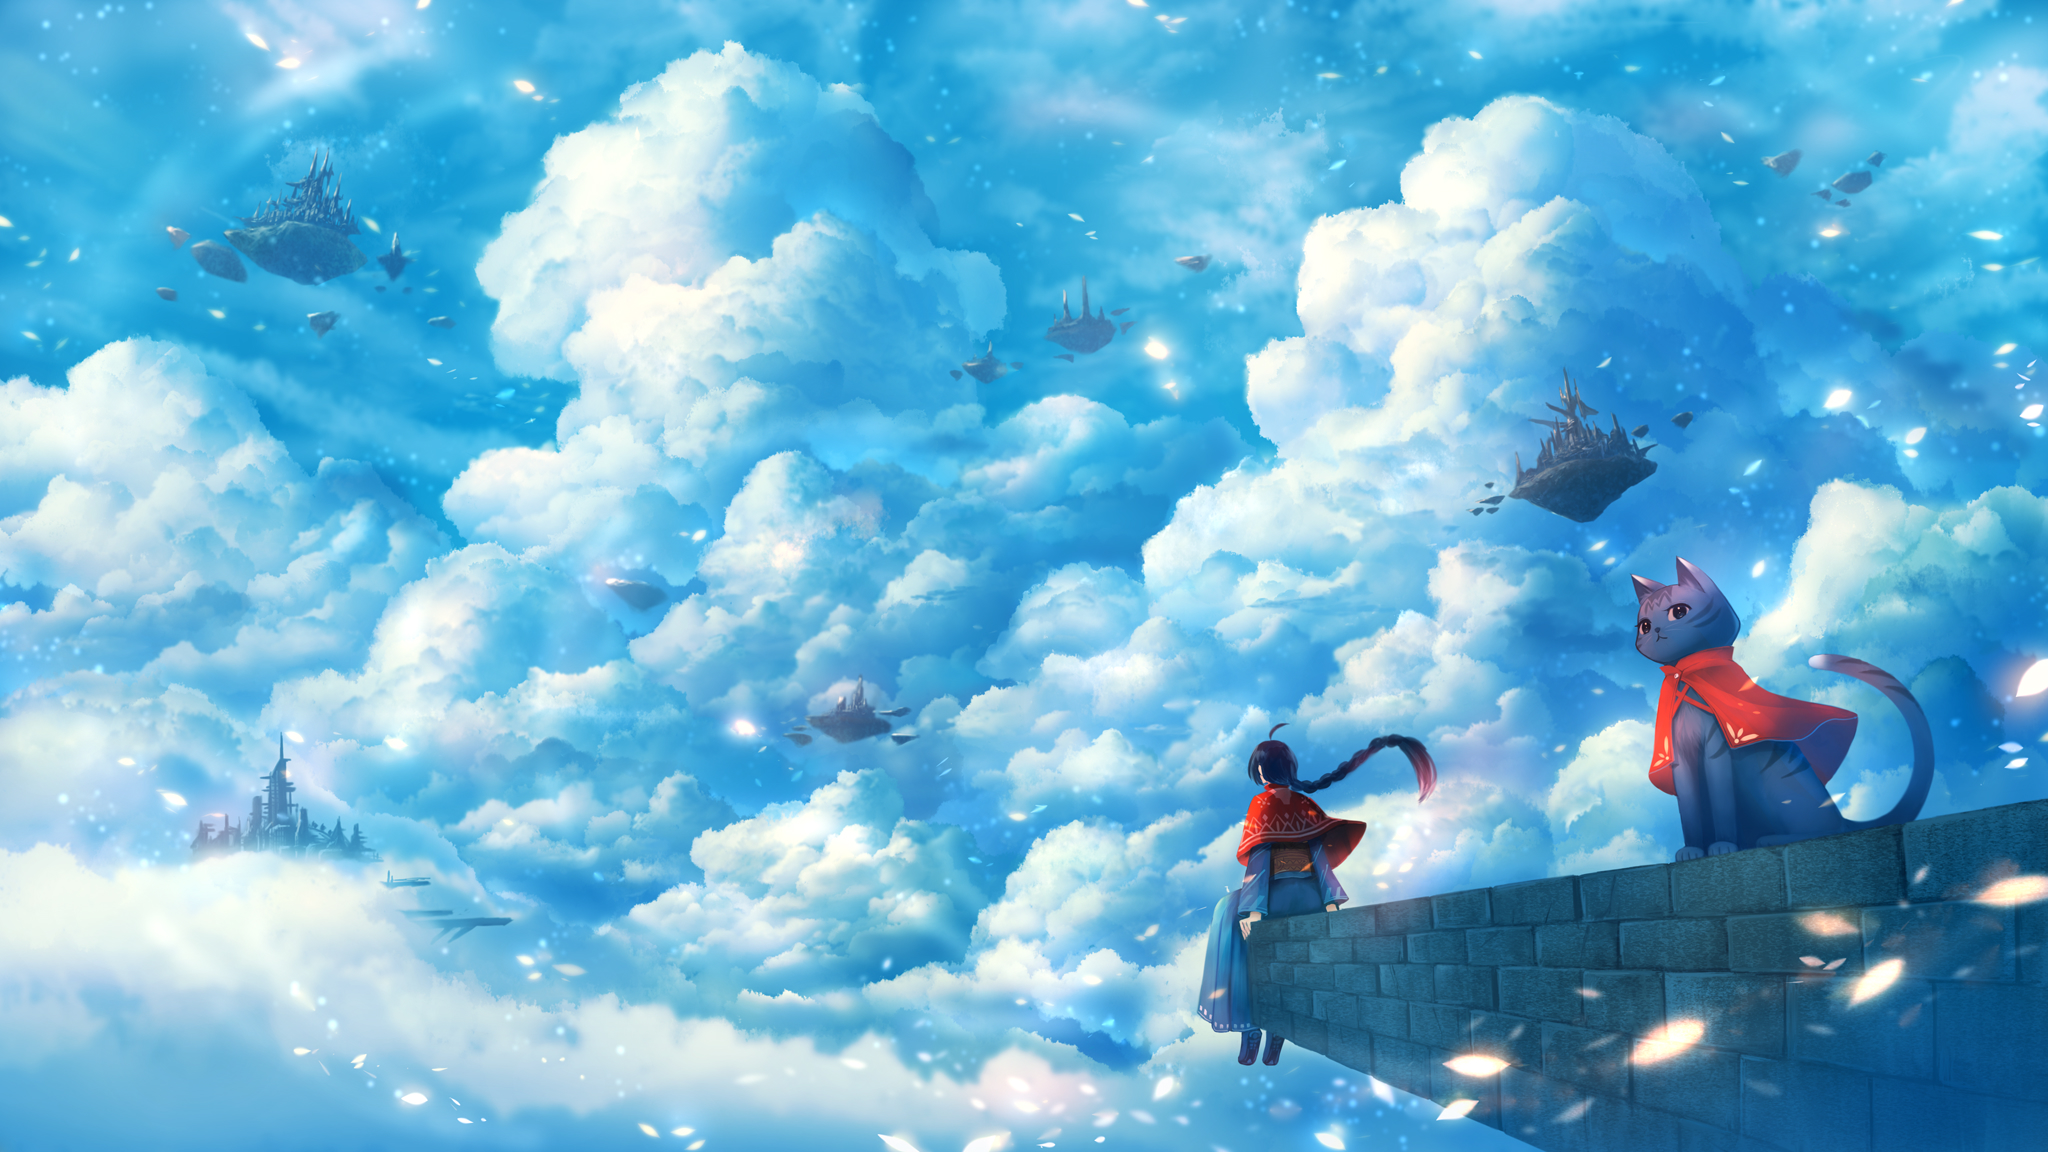 Скачать обои бесплатно Аниме, Небо, Облака, Кот, Девочка картинка на рабочий стол ПК